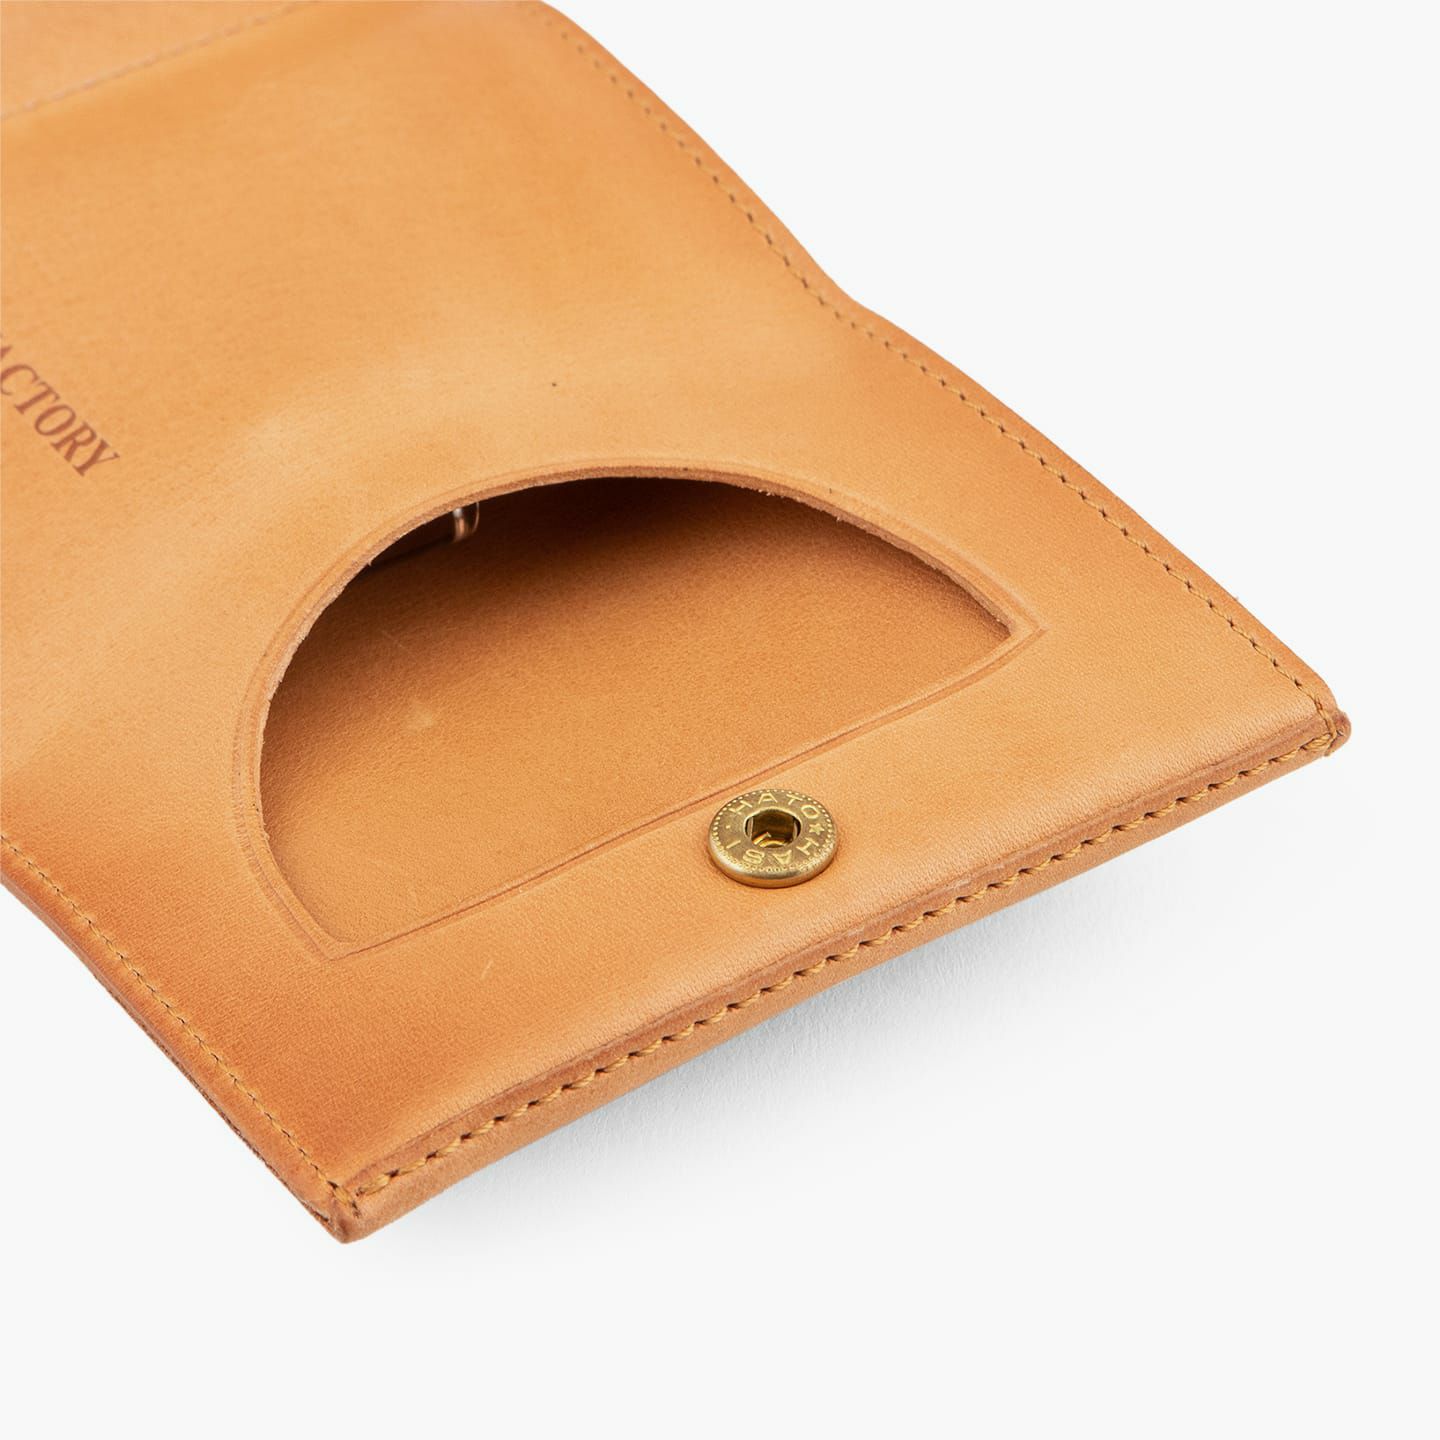 ニューヨーク 三つ折り財布 | メンズの財布・ ミニ・コンパクト財布 